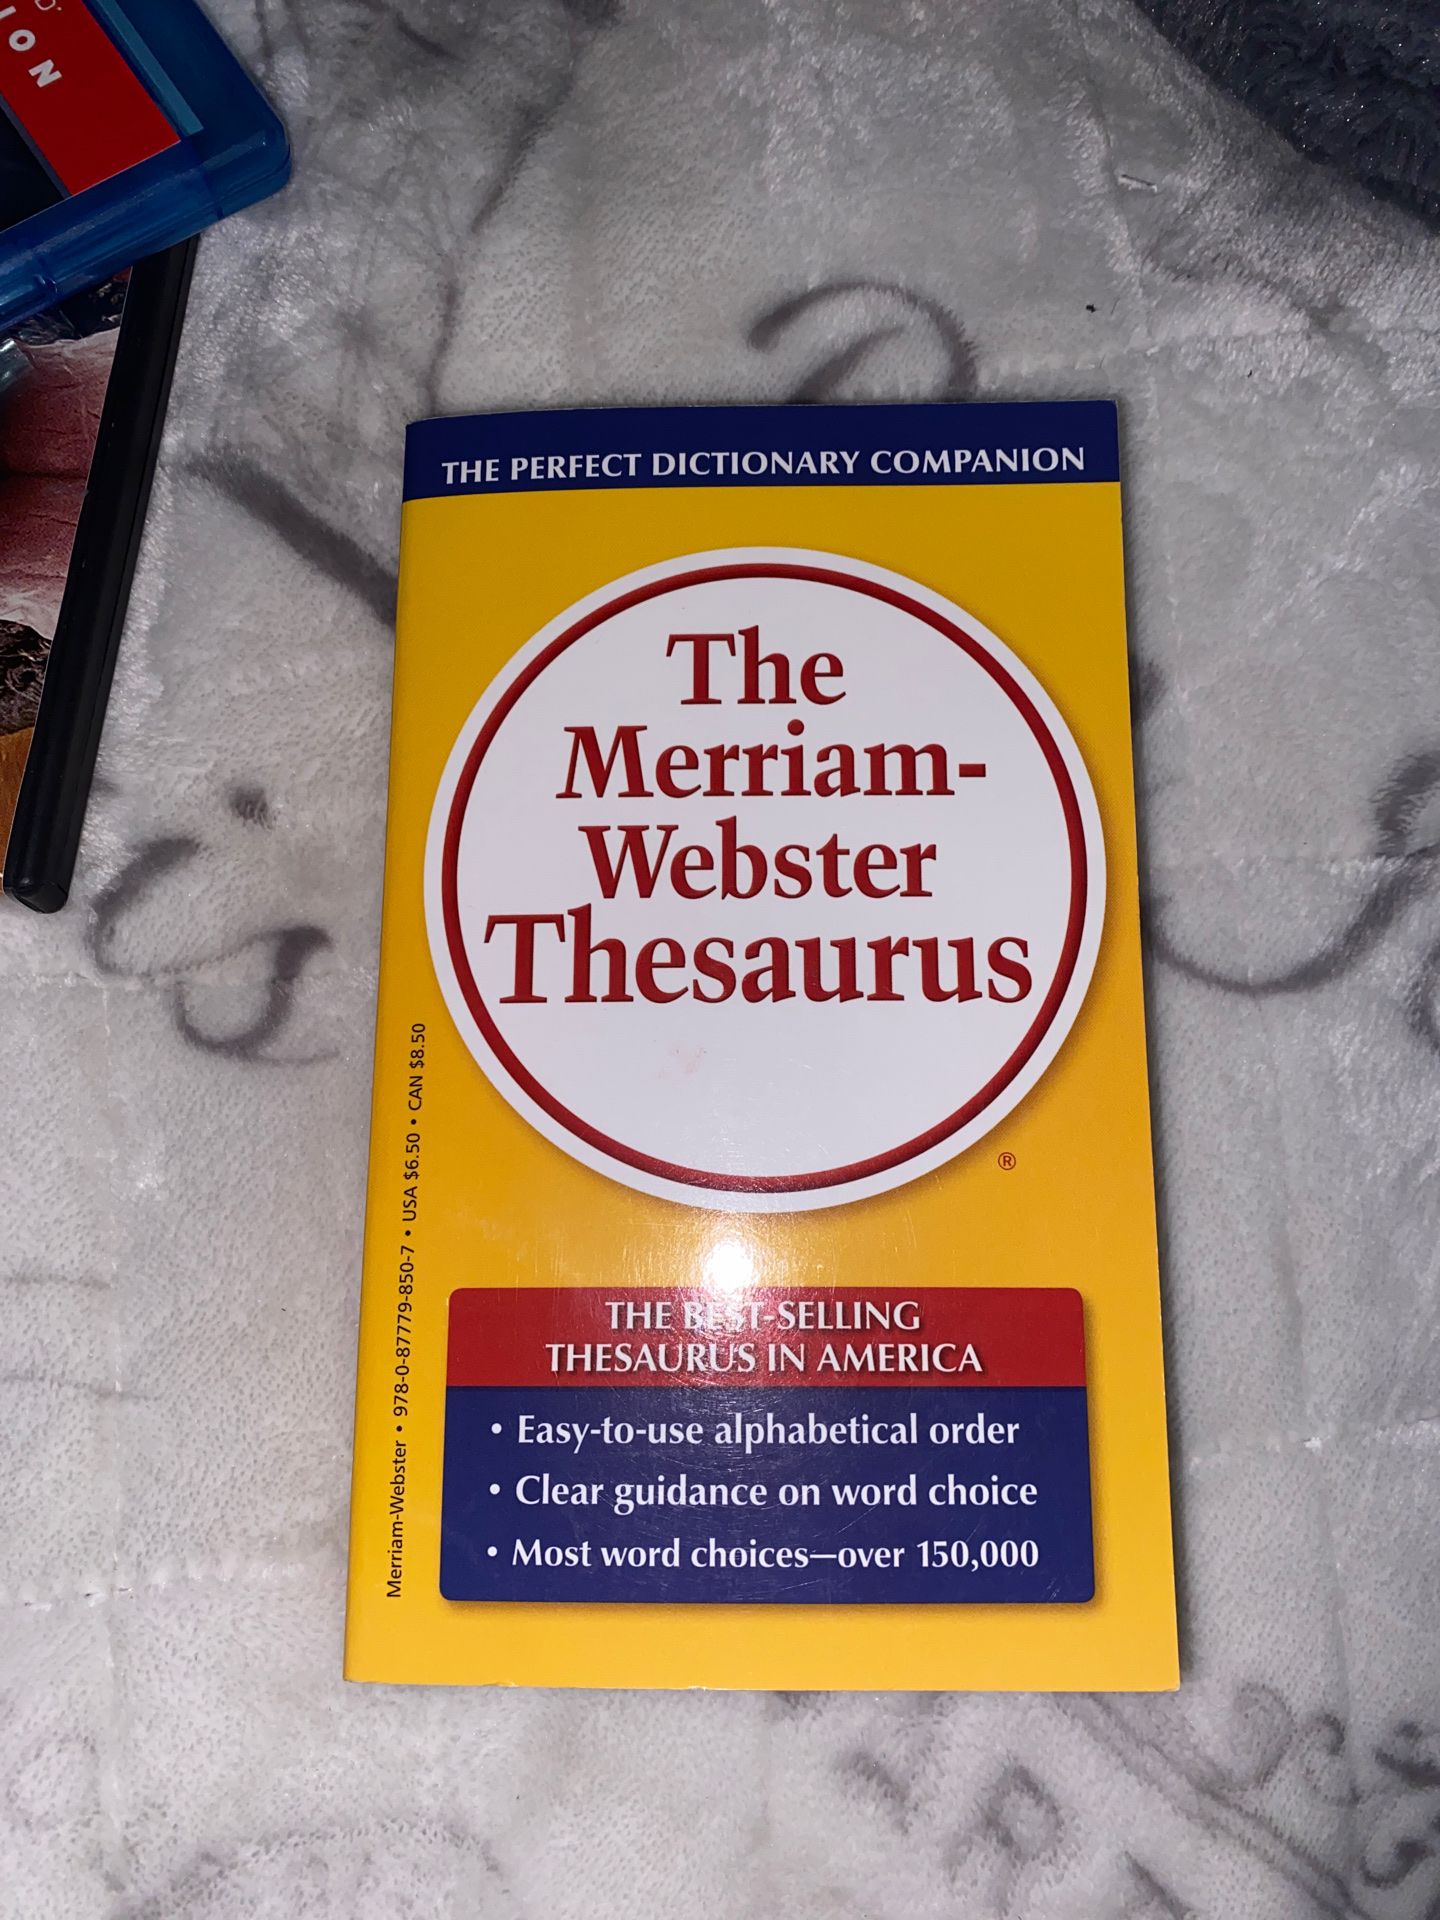 Brand new thesaurus